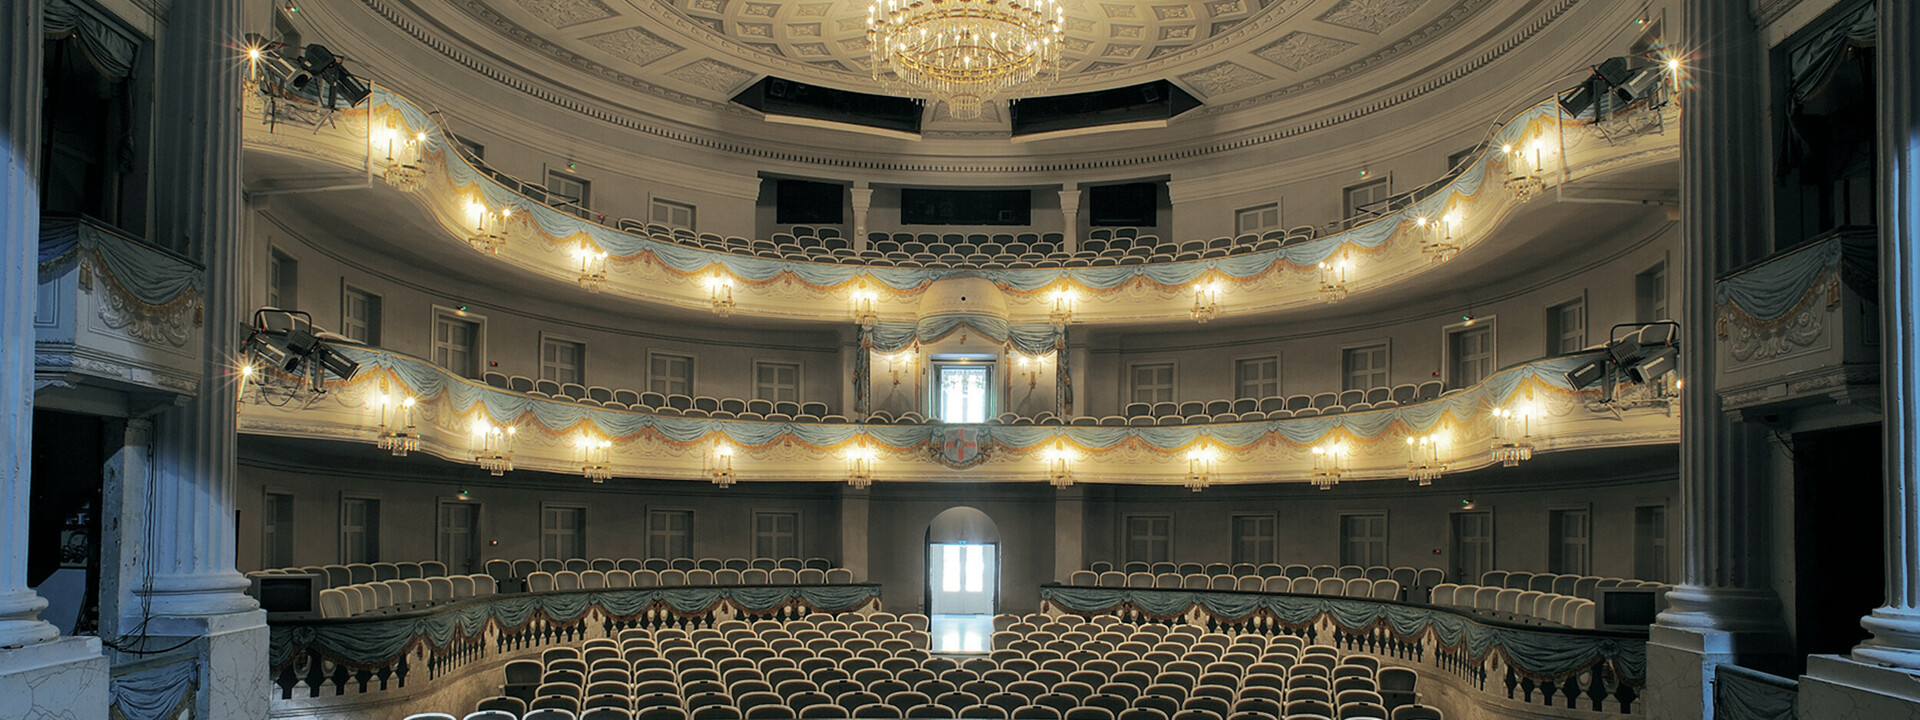 Bühne und Zuschauerbereich des Theaters Koblenz ©Matthias Baus für das Theater Koblenz